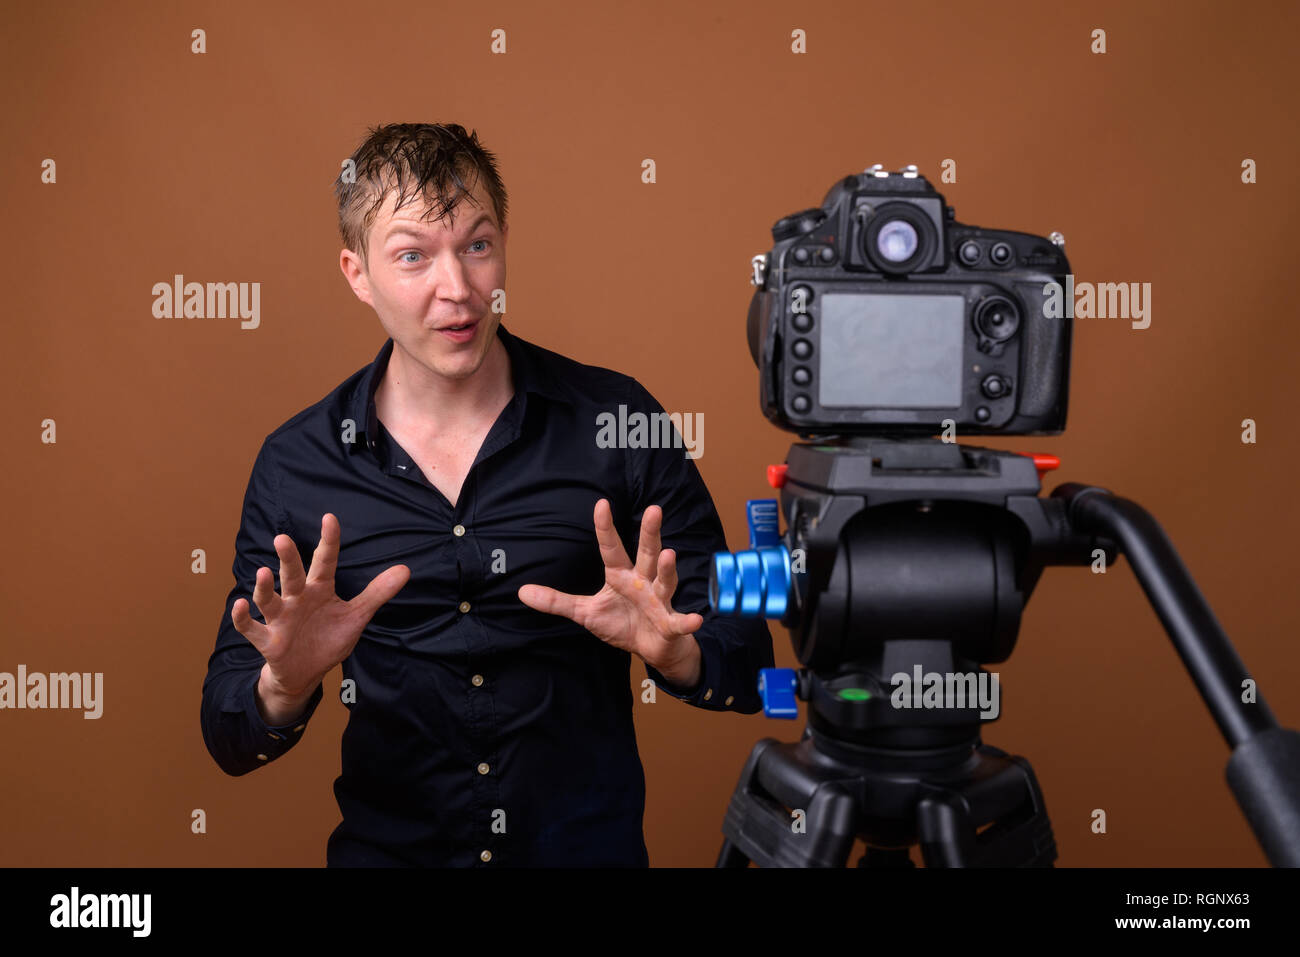 Homme heureux influenceur vlogging avec votre appareil photo reflex numérique en studio Banque D'Images